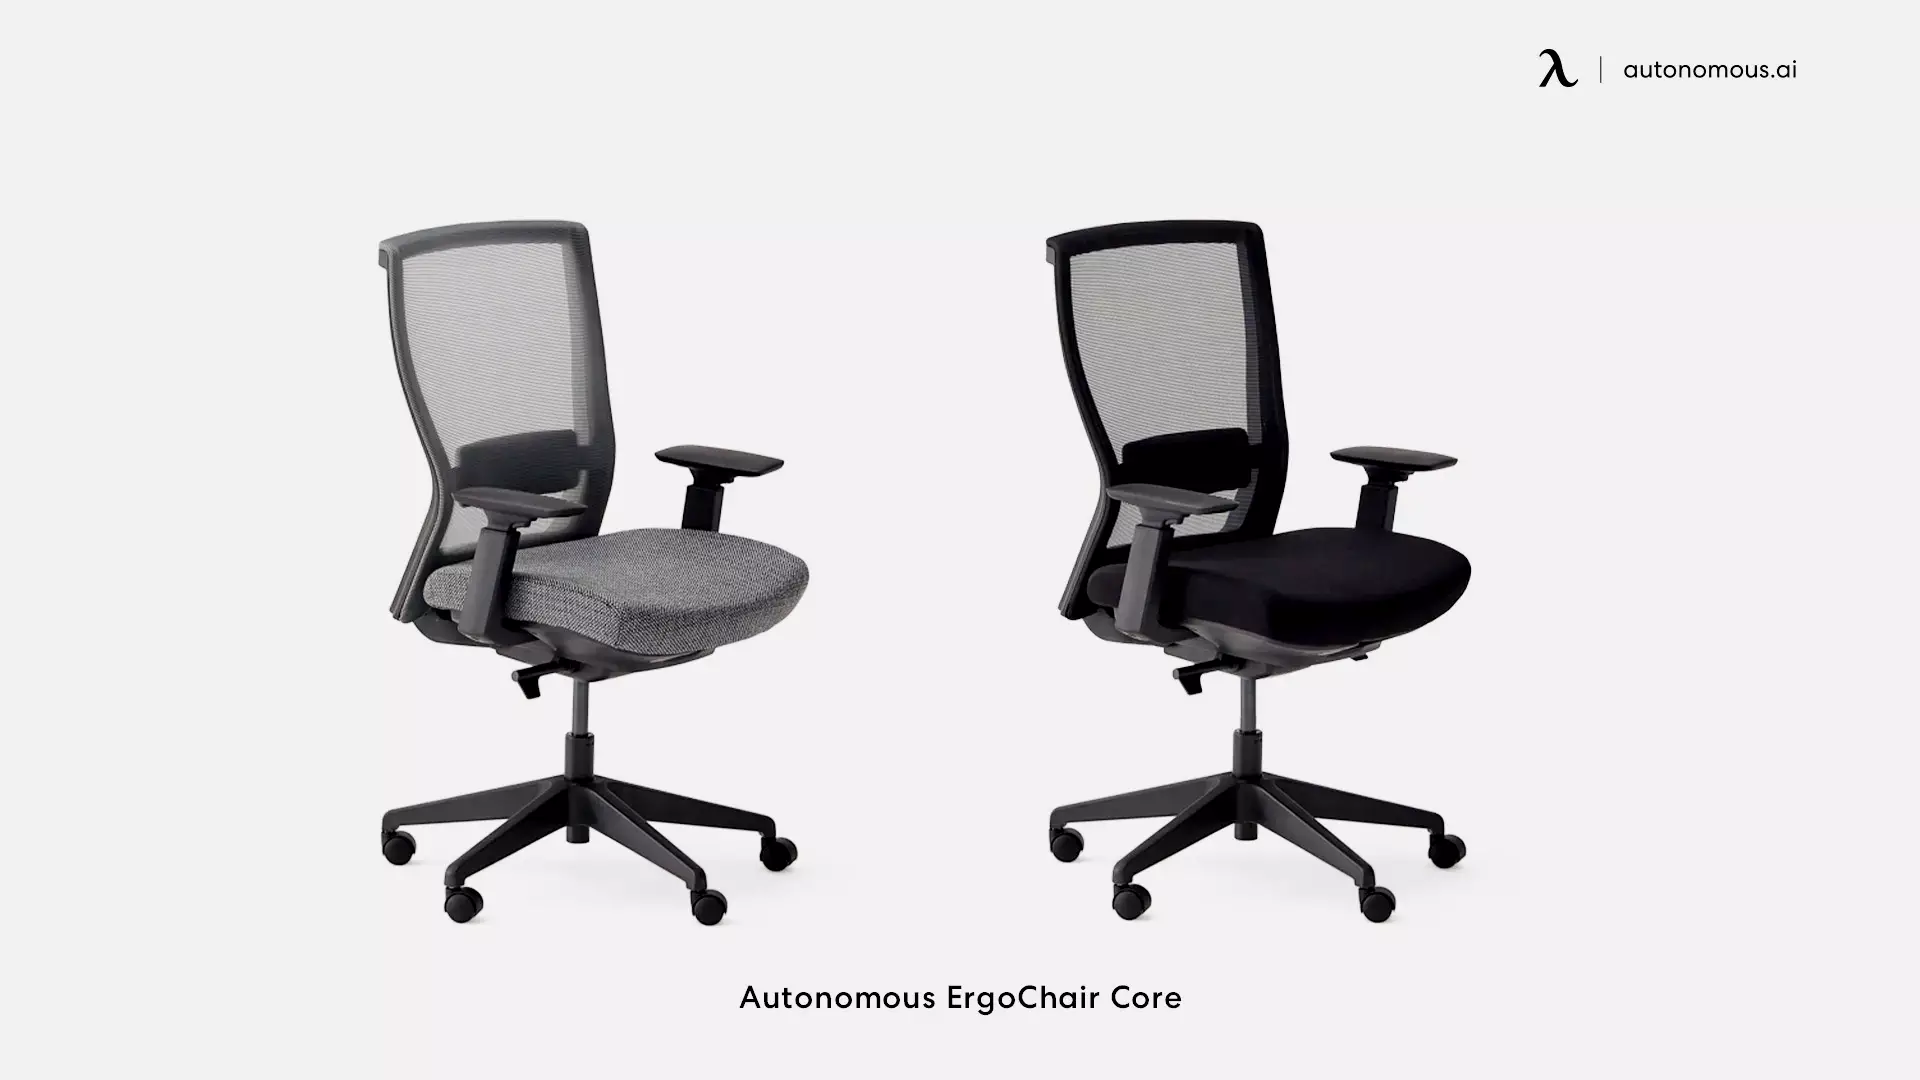 ErgoChair Core mesh office chair